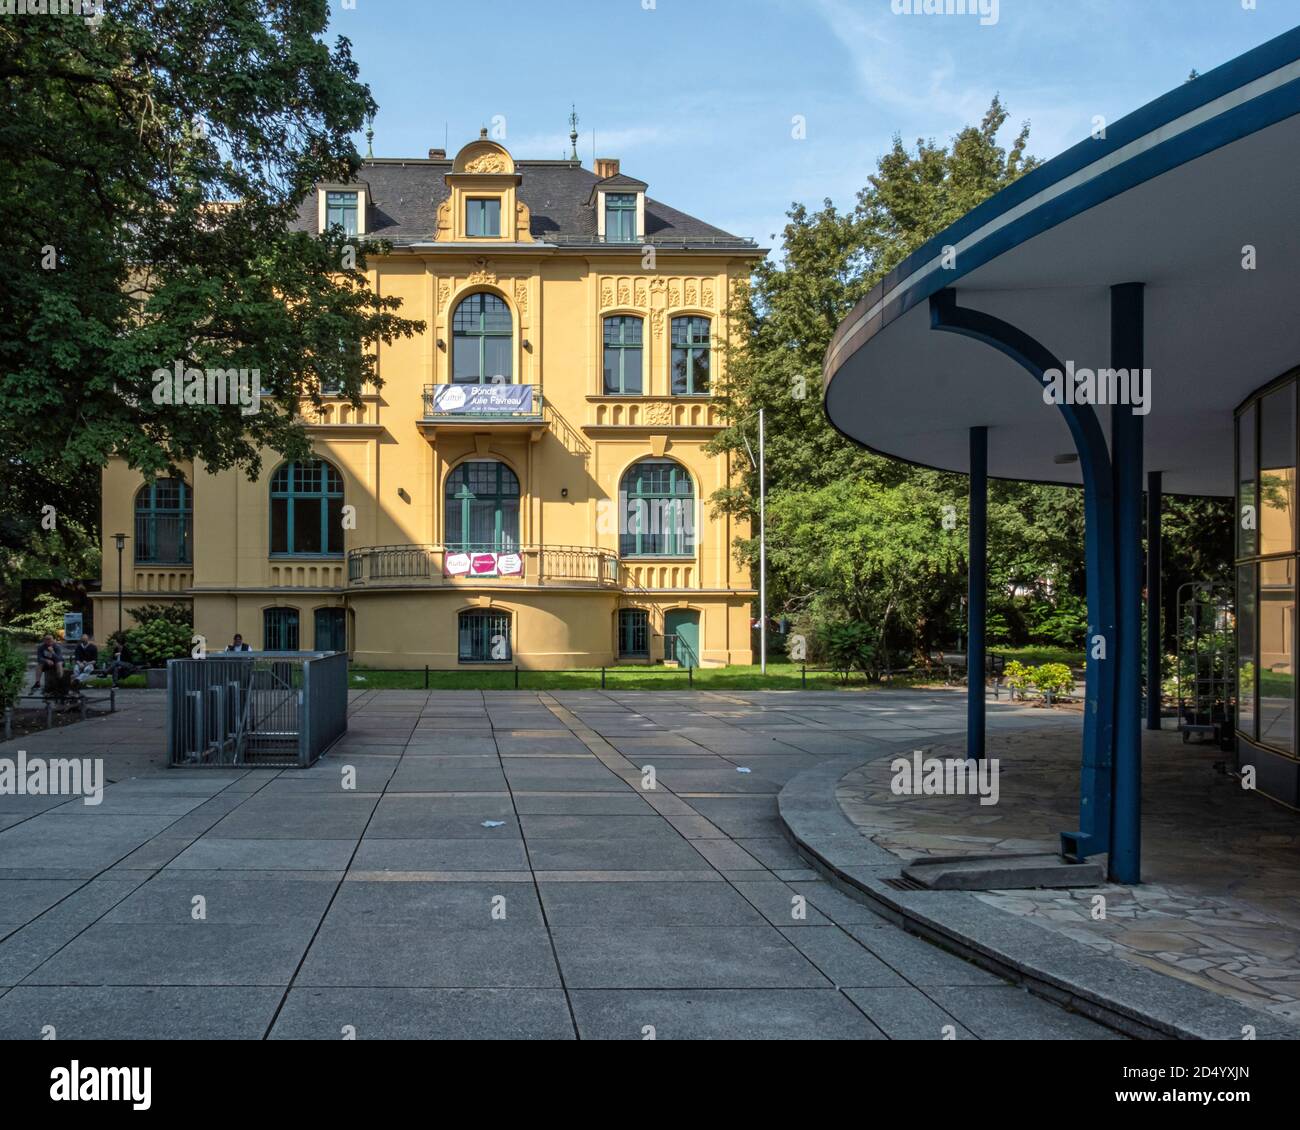 Berlino, la Villa Schwartzsche. Edificio storico, ora un'istituzione culturale pubblica di Steglitz-Zehlendorf che ospita mostre, concerti e teatro Foto Stock